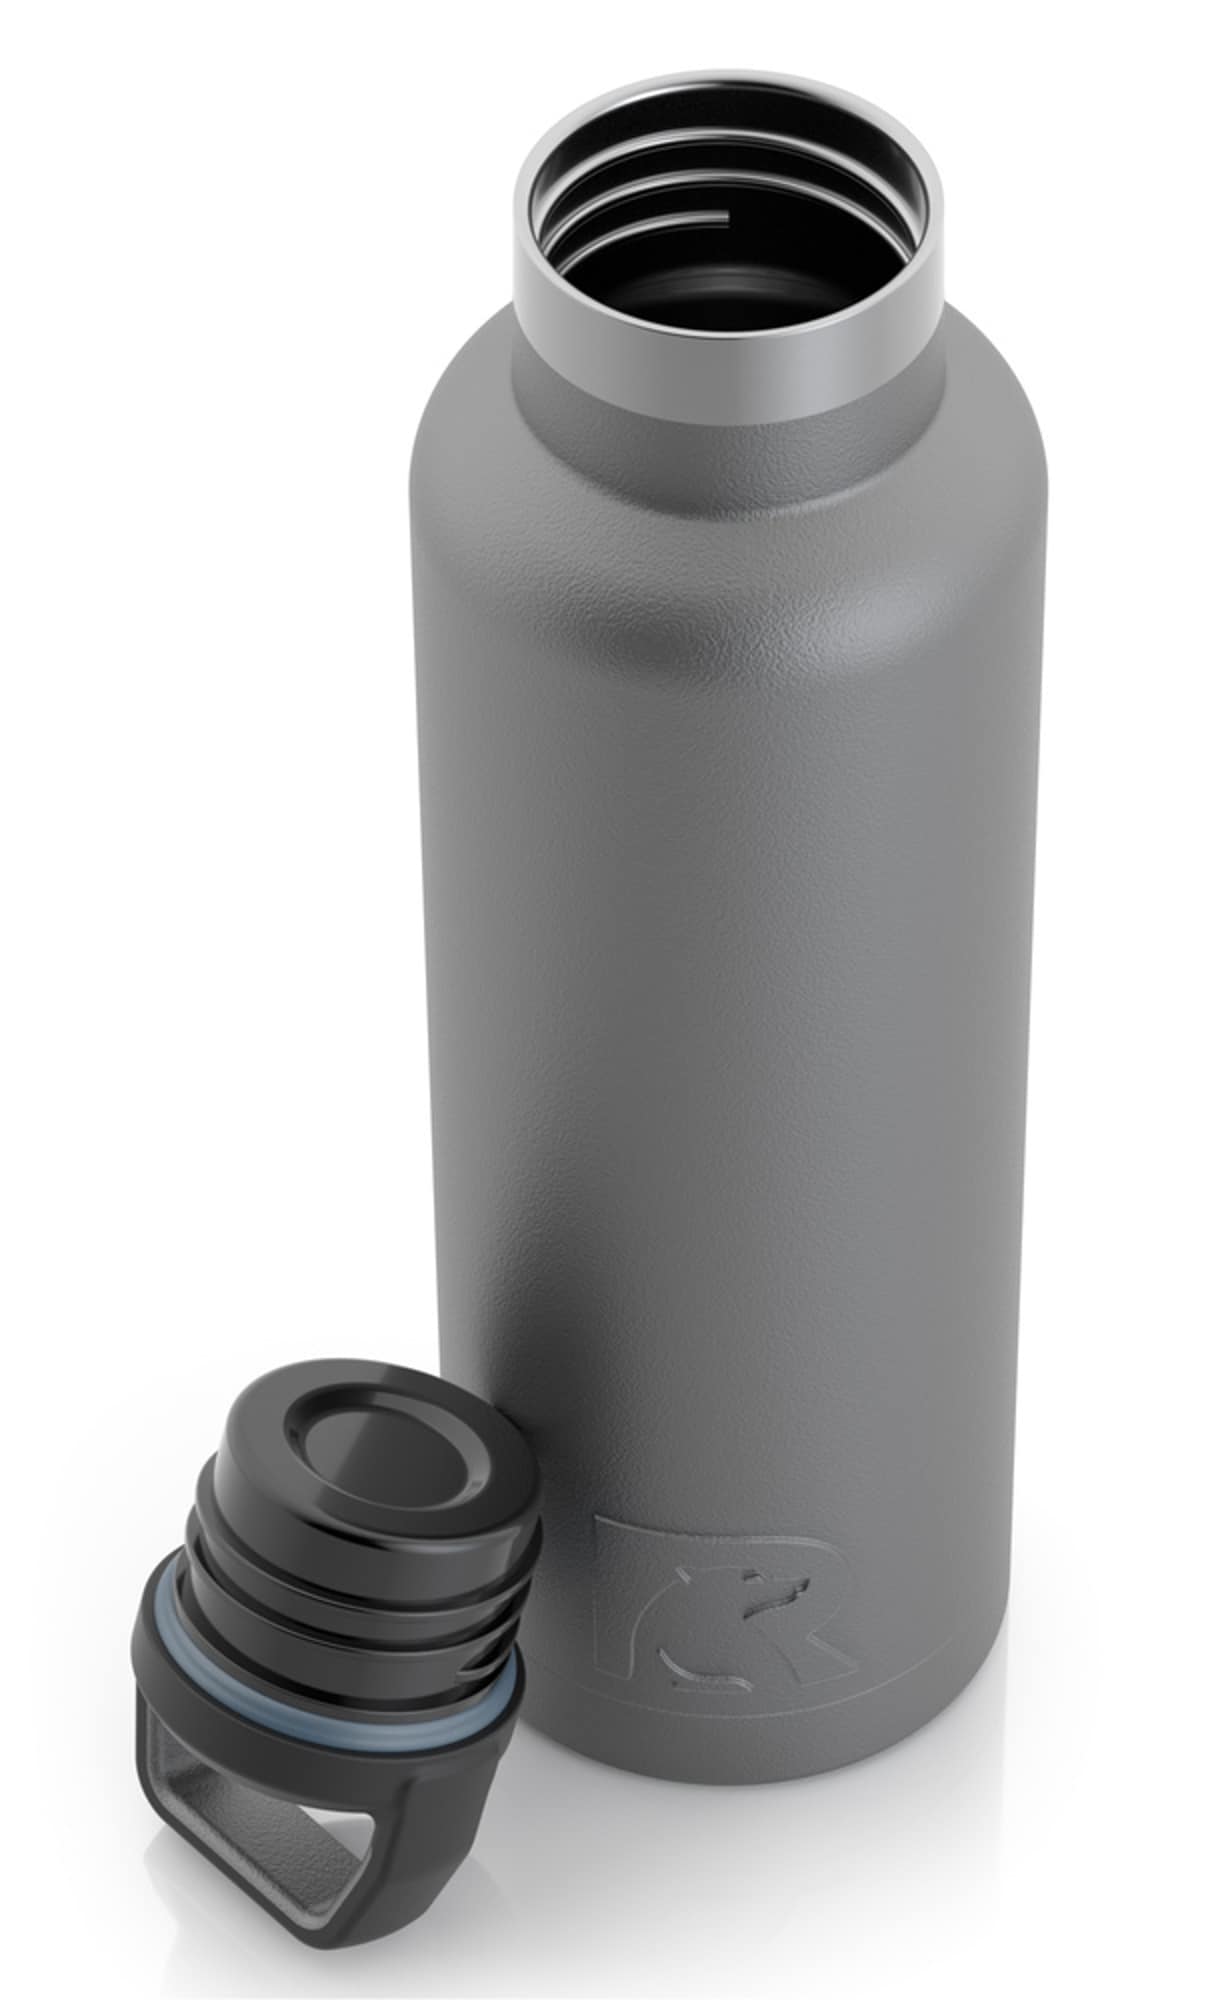 24 Oz Insulated Water Bottle – Dark Gray